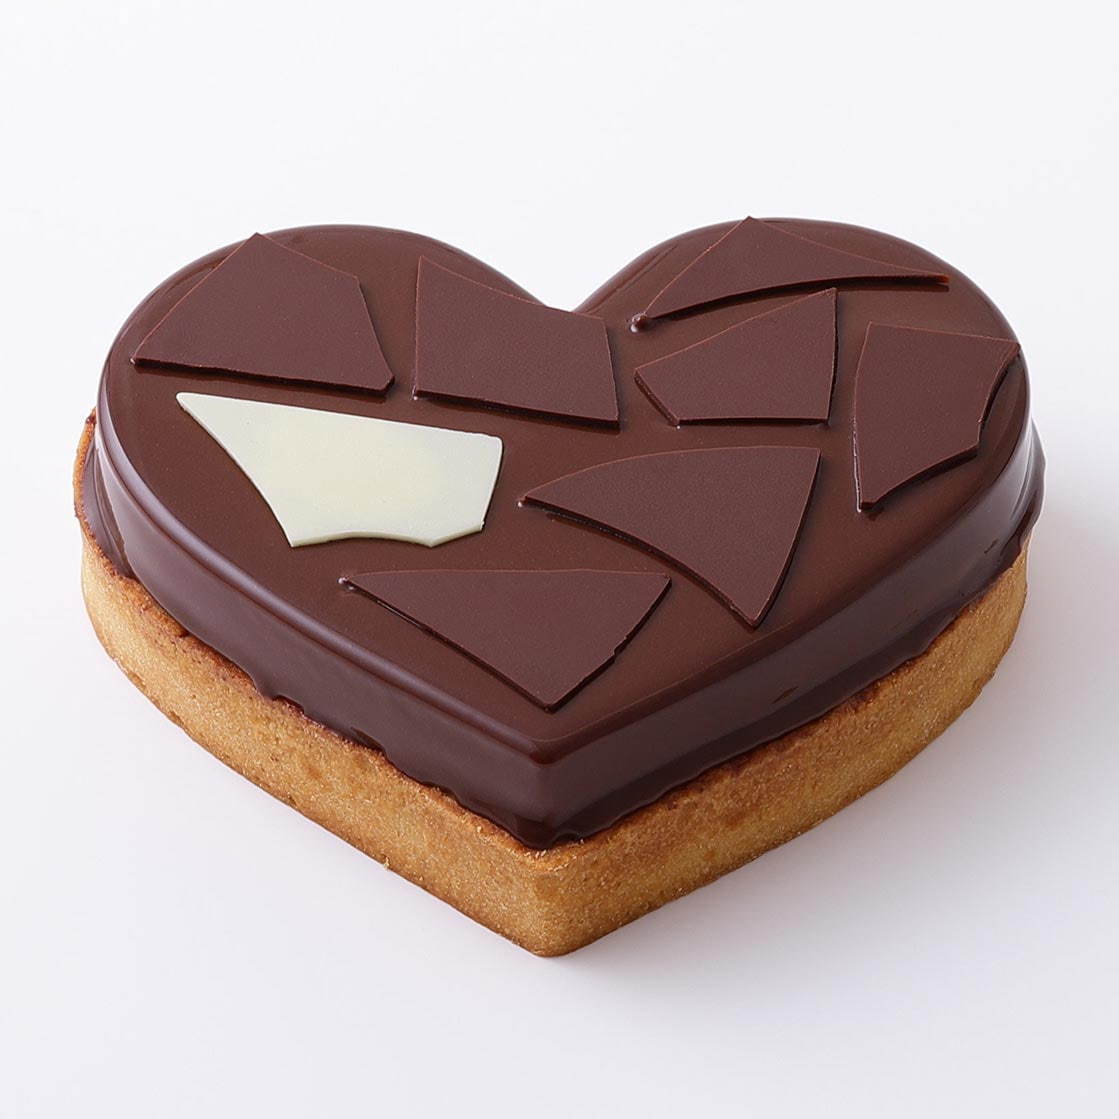 ピエール・エルメ・パリのバレンタイン"杉の実"チョコレートやショコラマカロン、ハート型ケーキも｜写真12